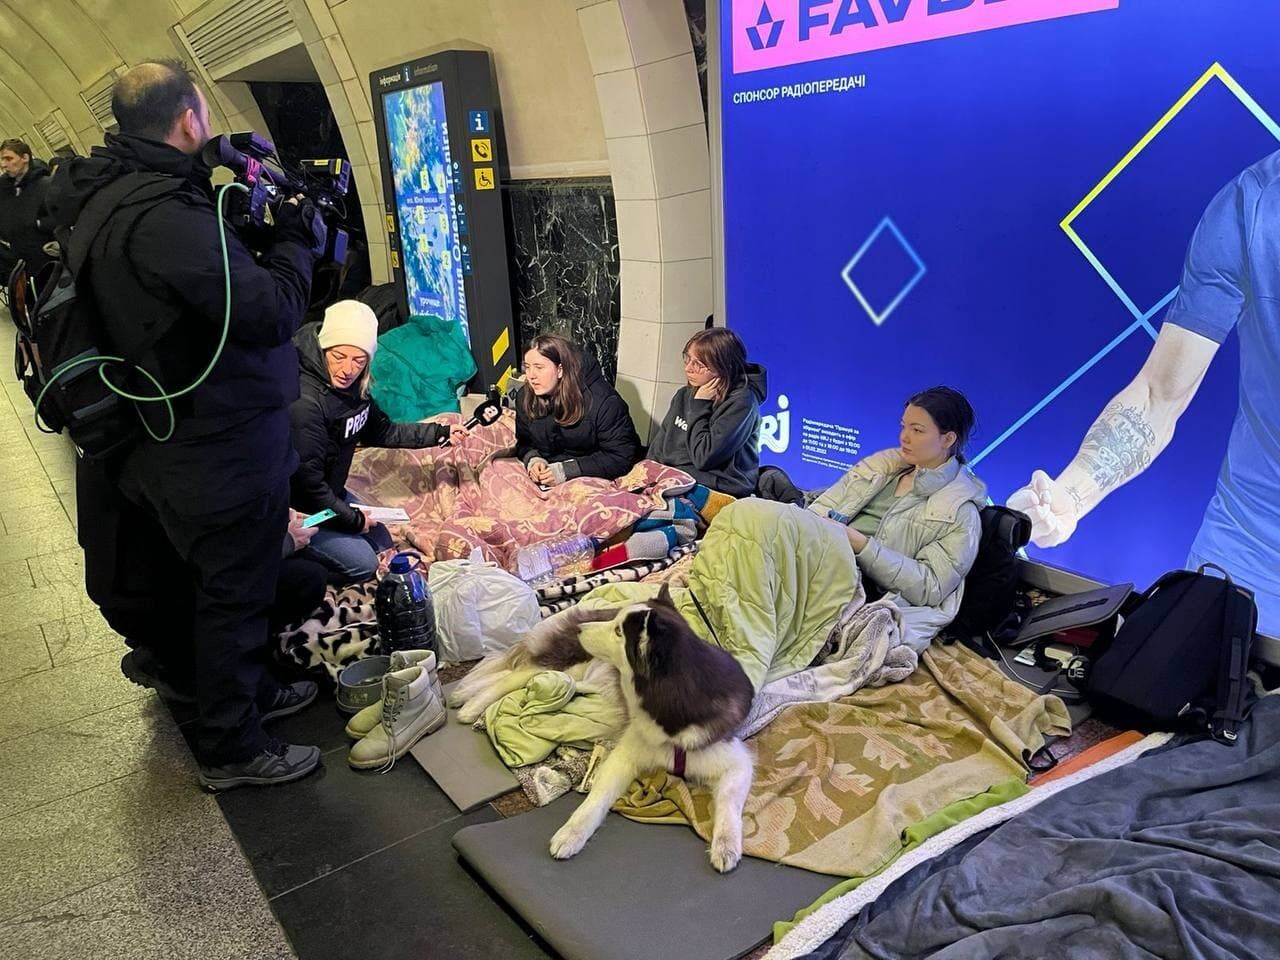 Іноземні журналісти побачили, в яких умовах живуть кияни в метрополітені. Фото і відео